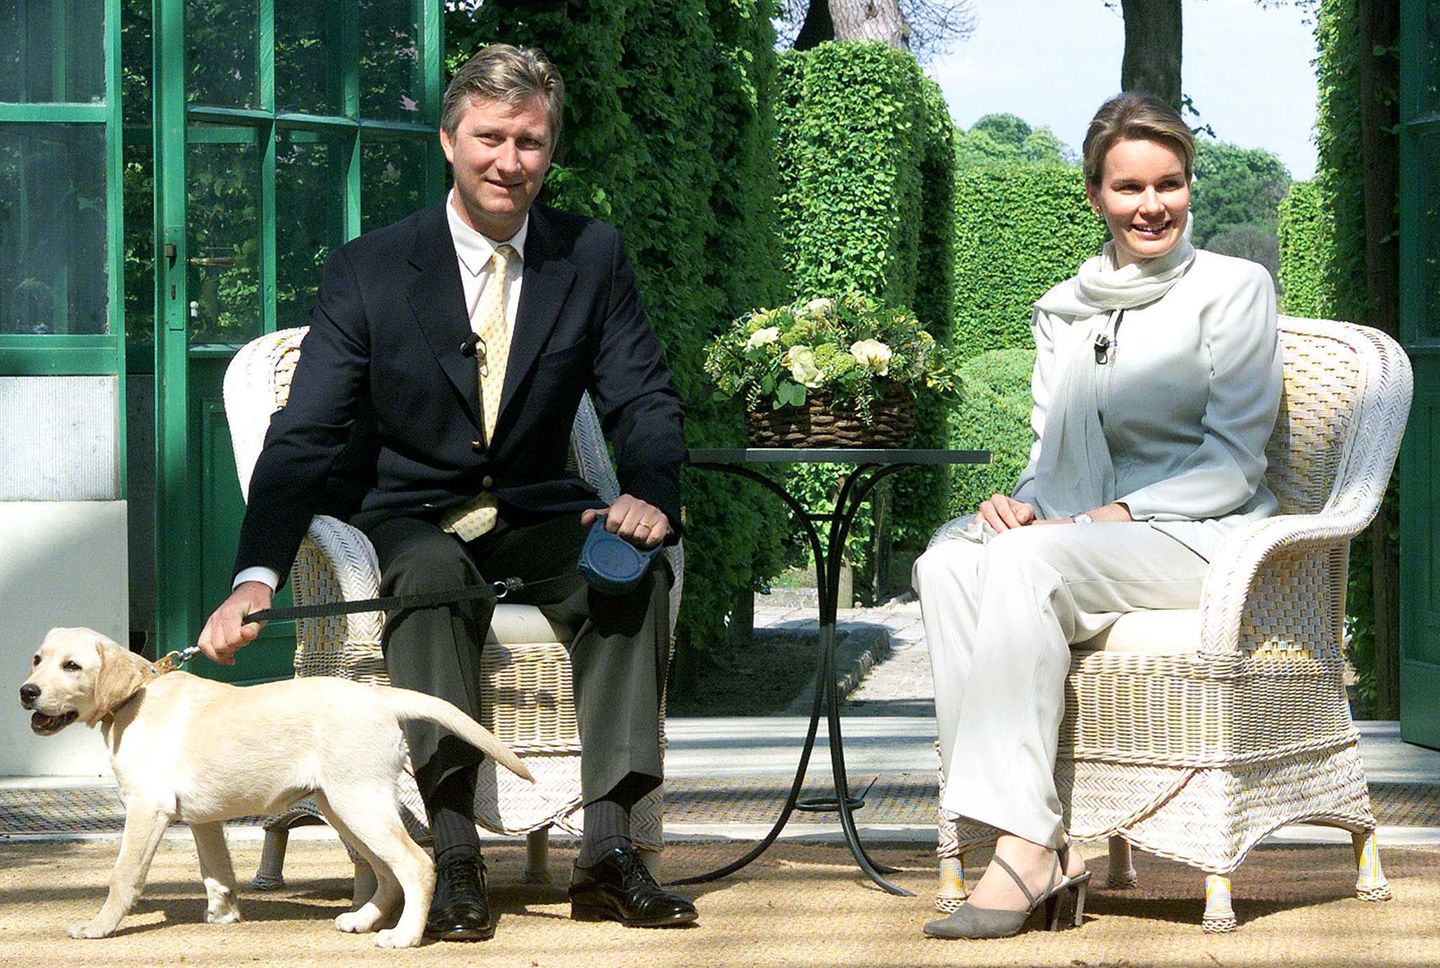 2001 geben Prinz Philippe und seine Frau Mathilde bekannt, dass sie ihr erstes Kind erwarten. Bei der Pressekonferenz dabei ist ihr Hund.